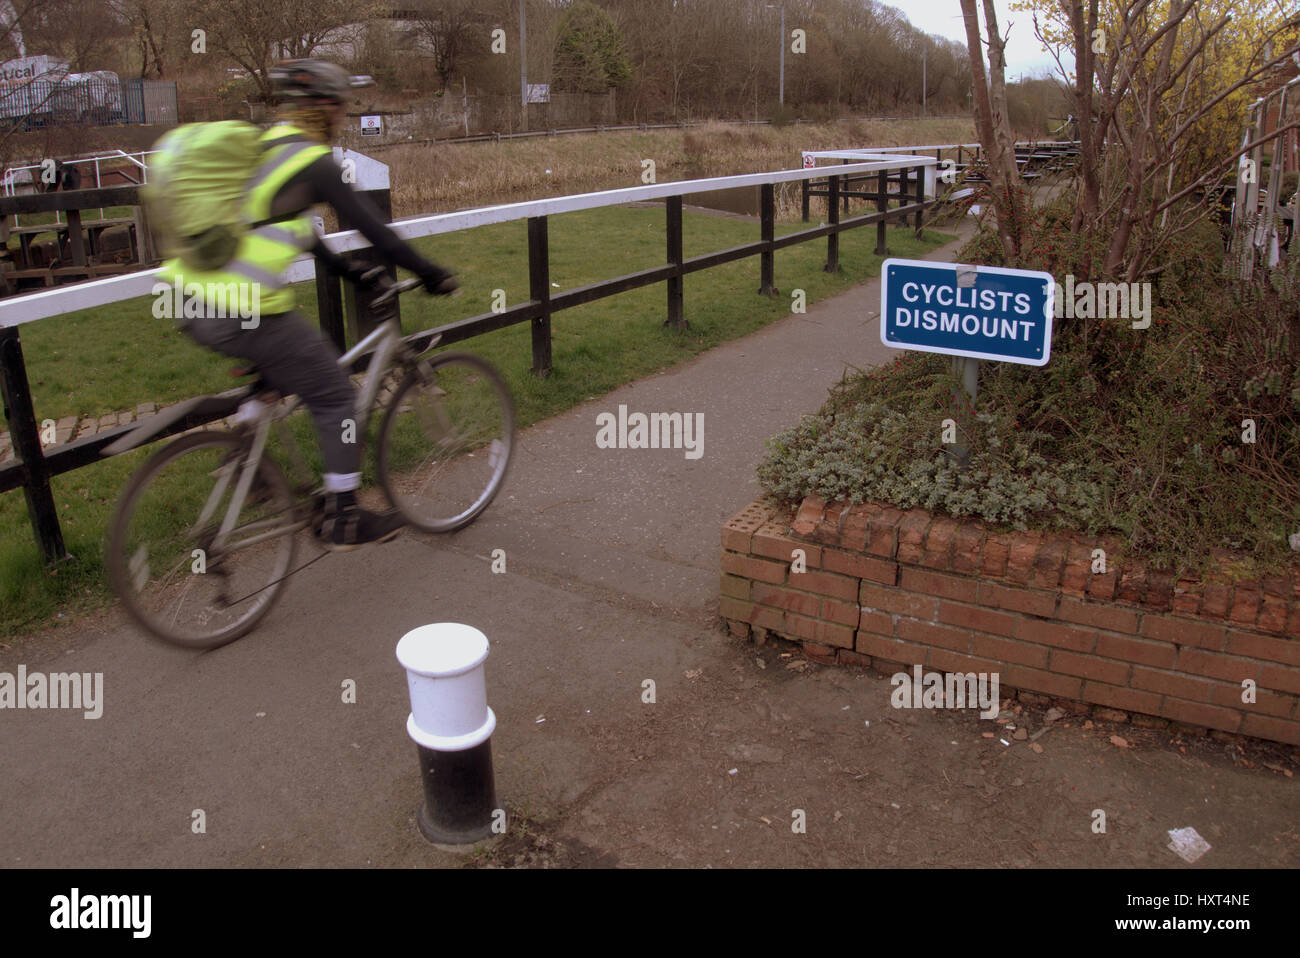 Via clyde canale percorso ciclabile ciclisti smontare il segno Foto Stock